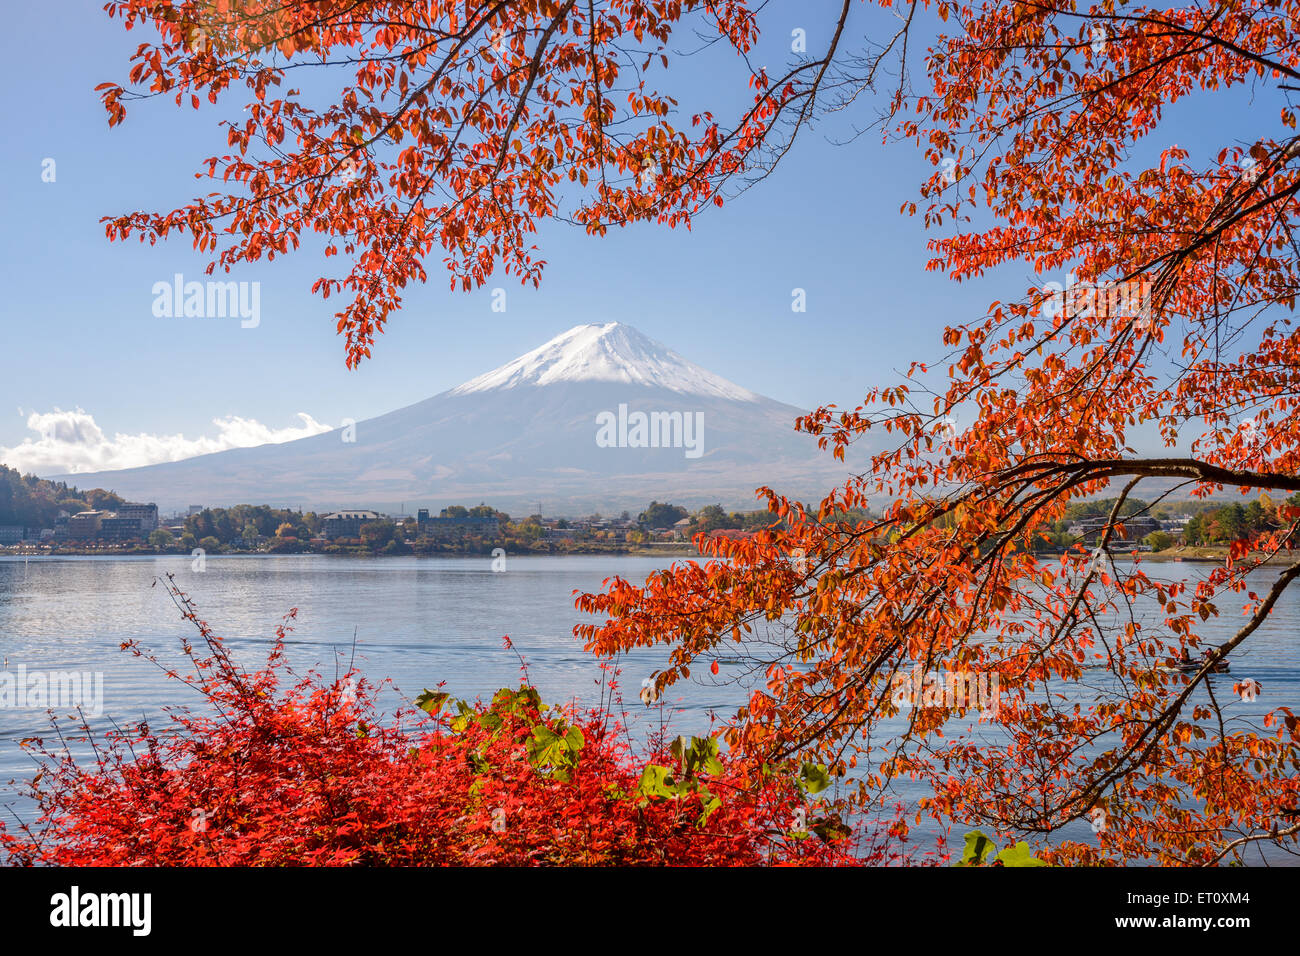 Mt. Fuji, Japan at Lake Kawaguchi during the autumn season. Stock Photo